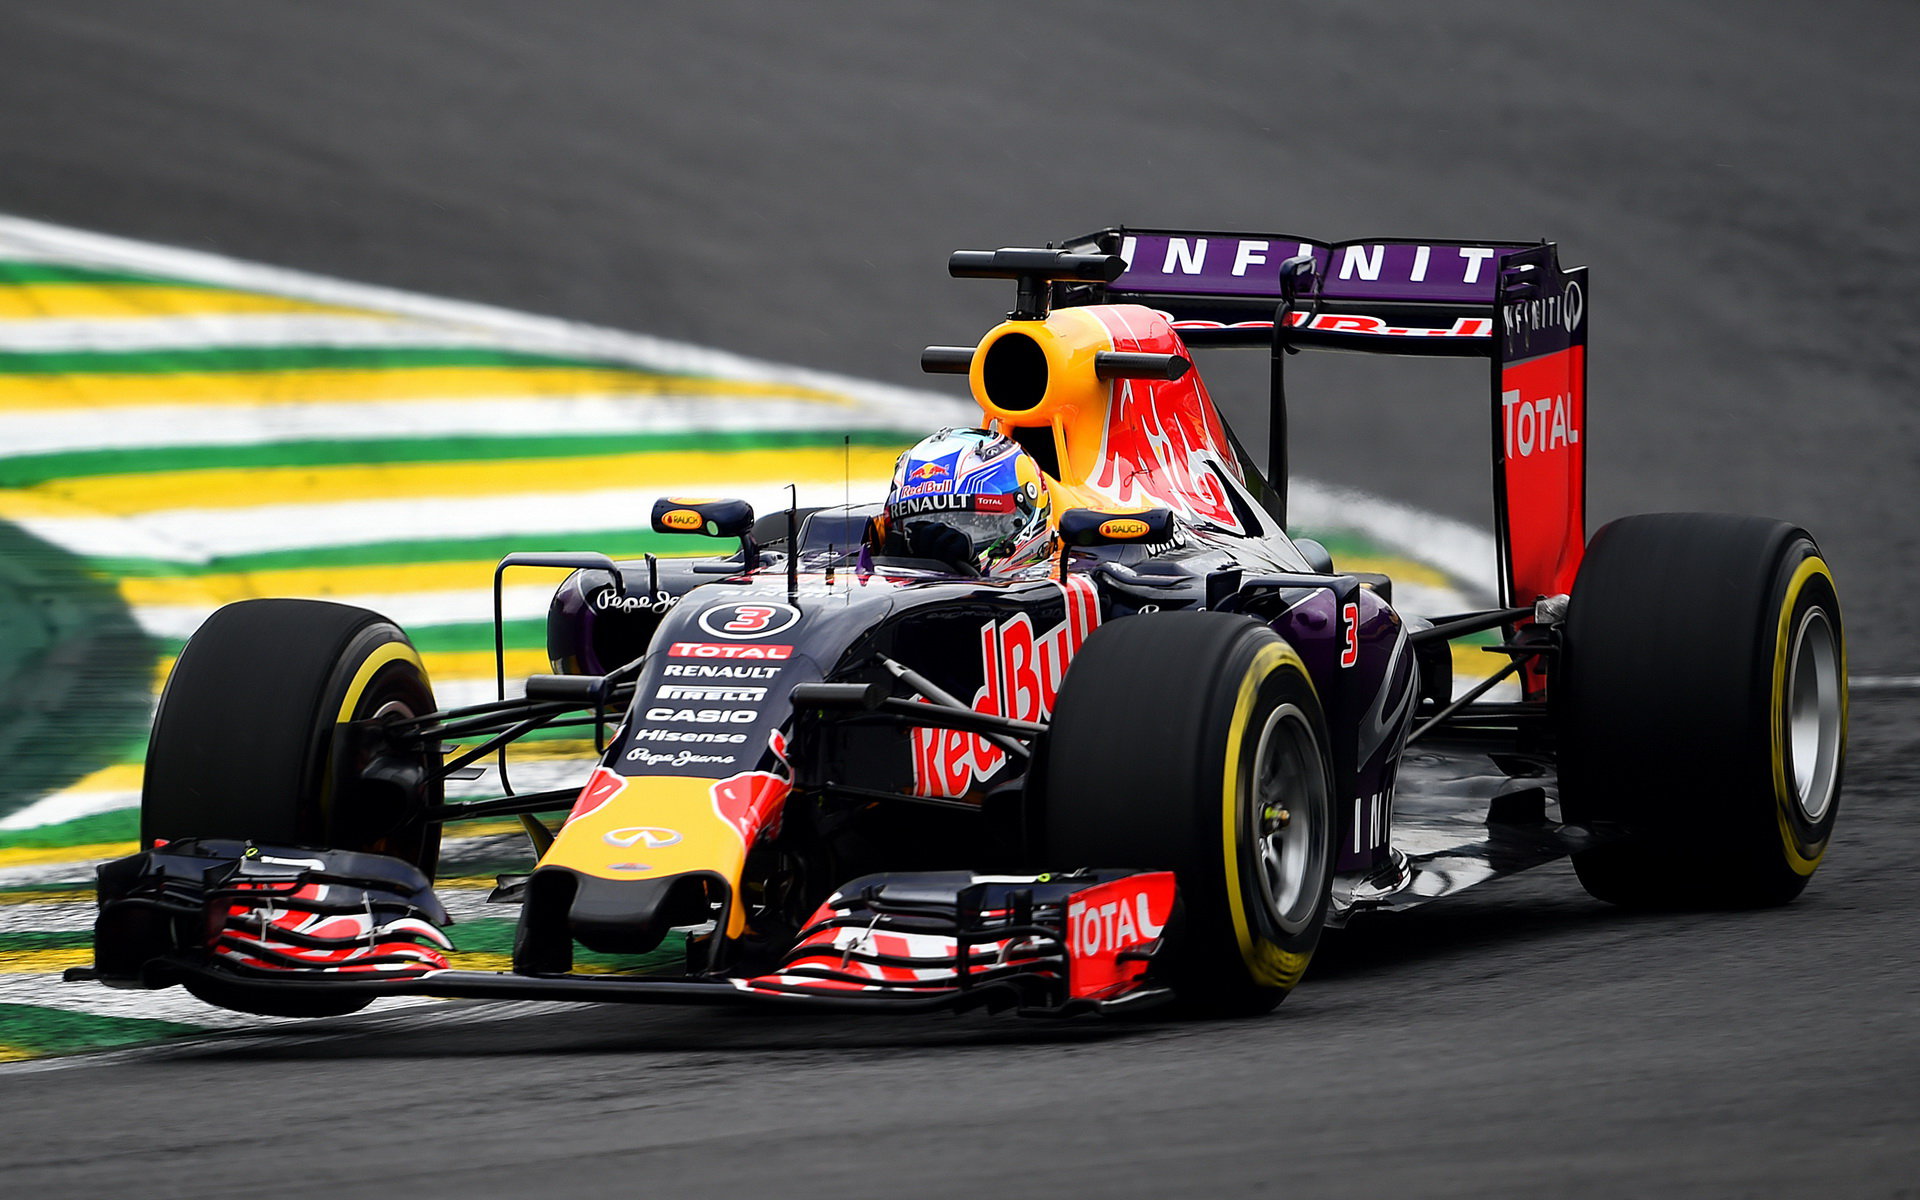 Daniel Ricciardo v Brazílii